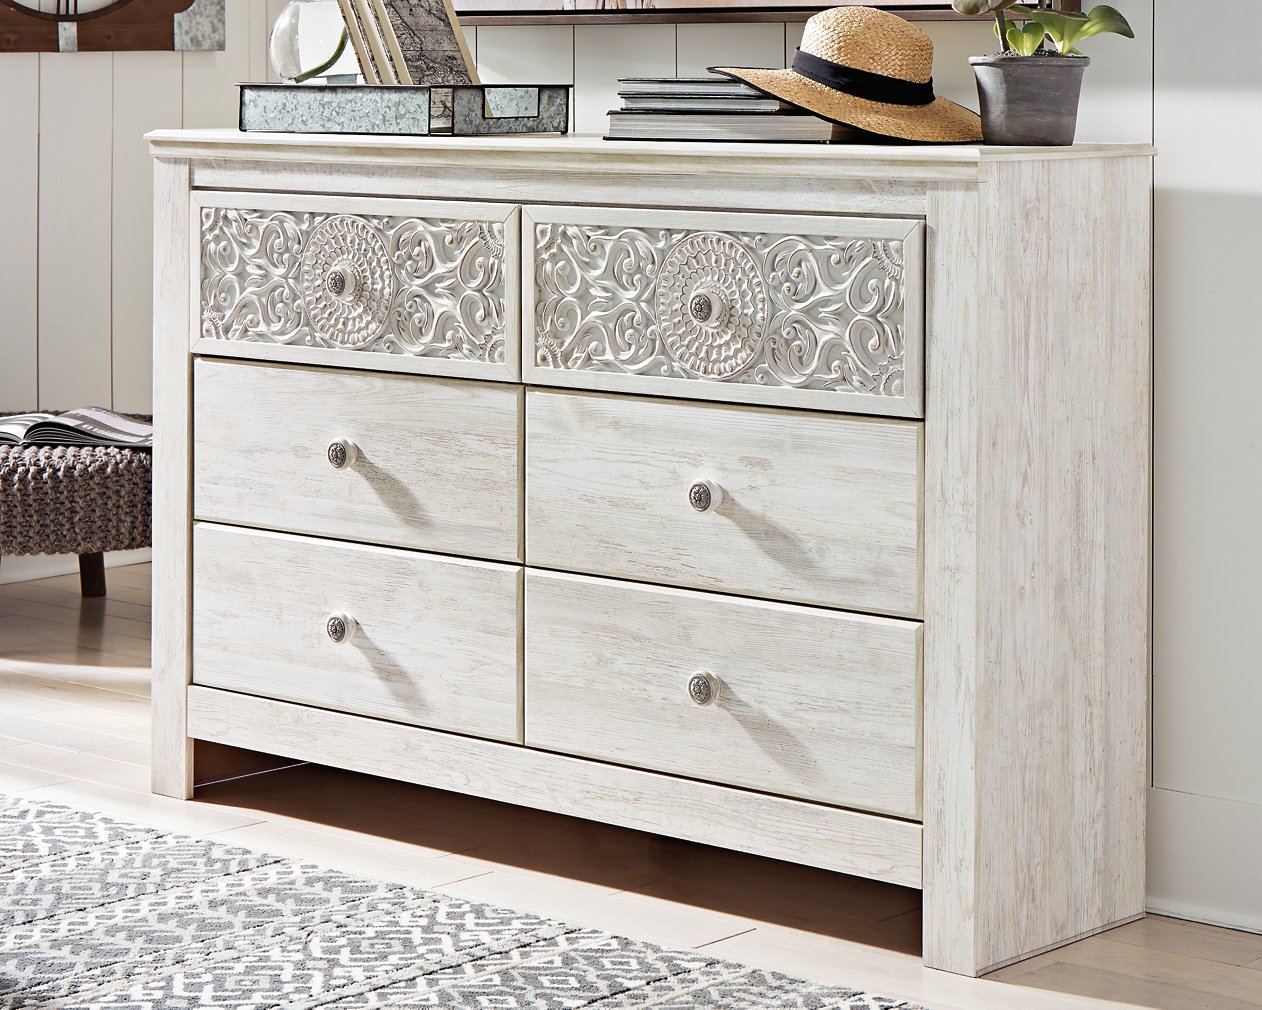 Paxberry Dresser - Half Price Furniture